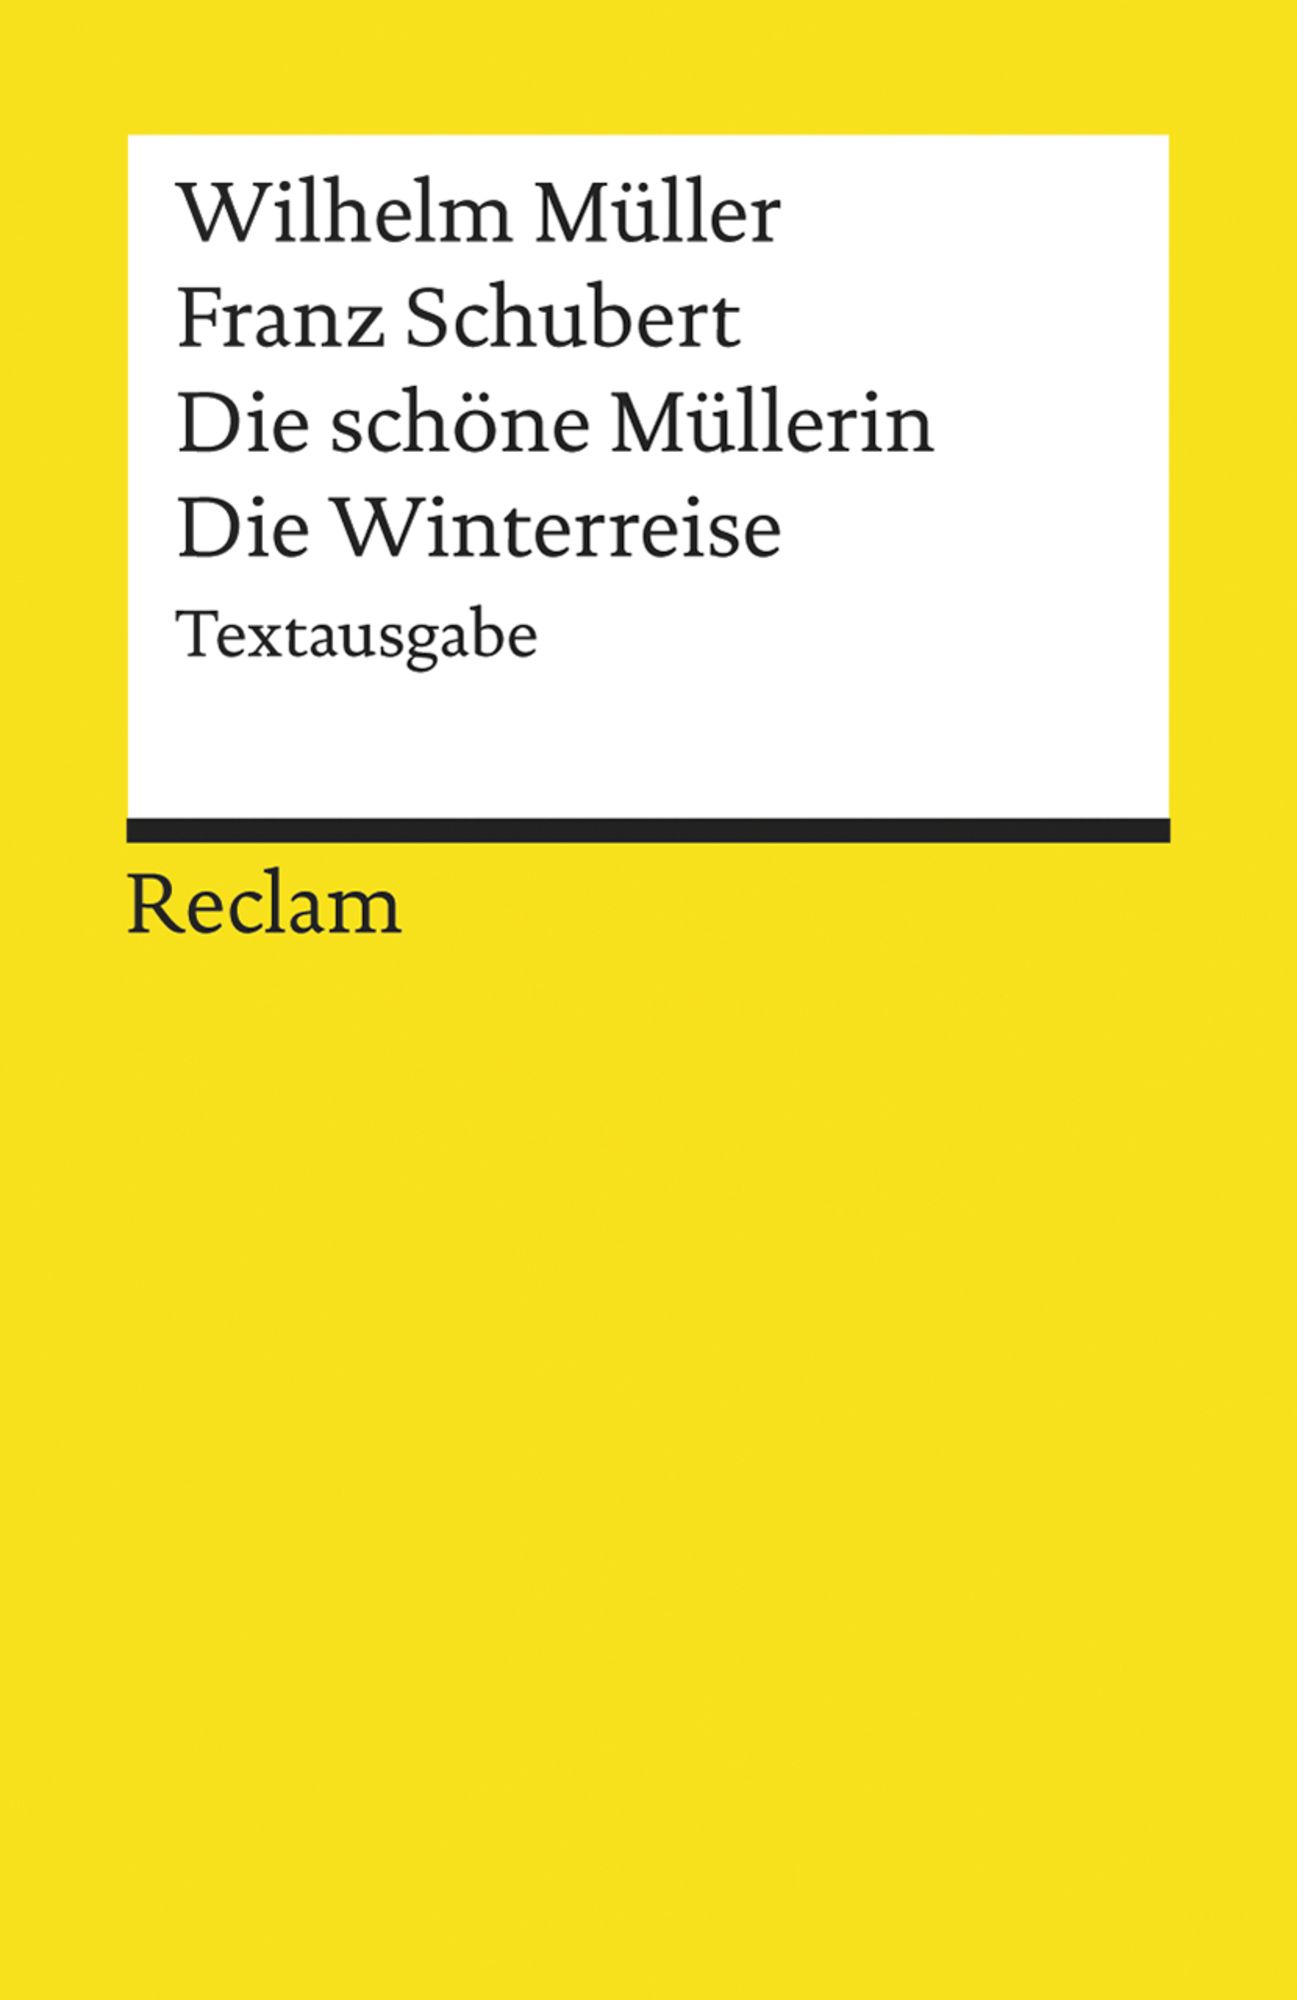 Buch　'Wilhelm　Müllerin.　'978-3-15-018121-8'　Die　von　Winterreise'　schöne　Die　Müller'